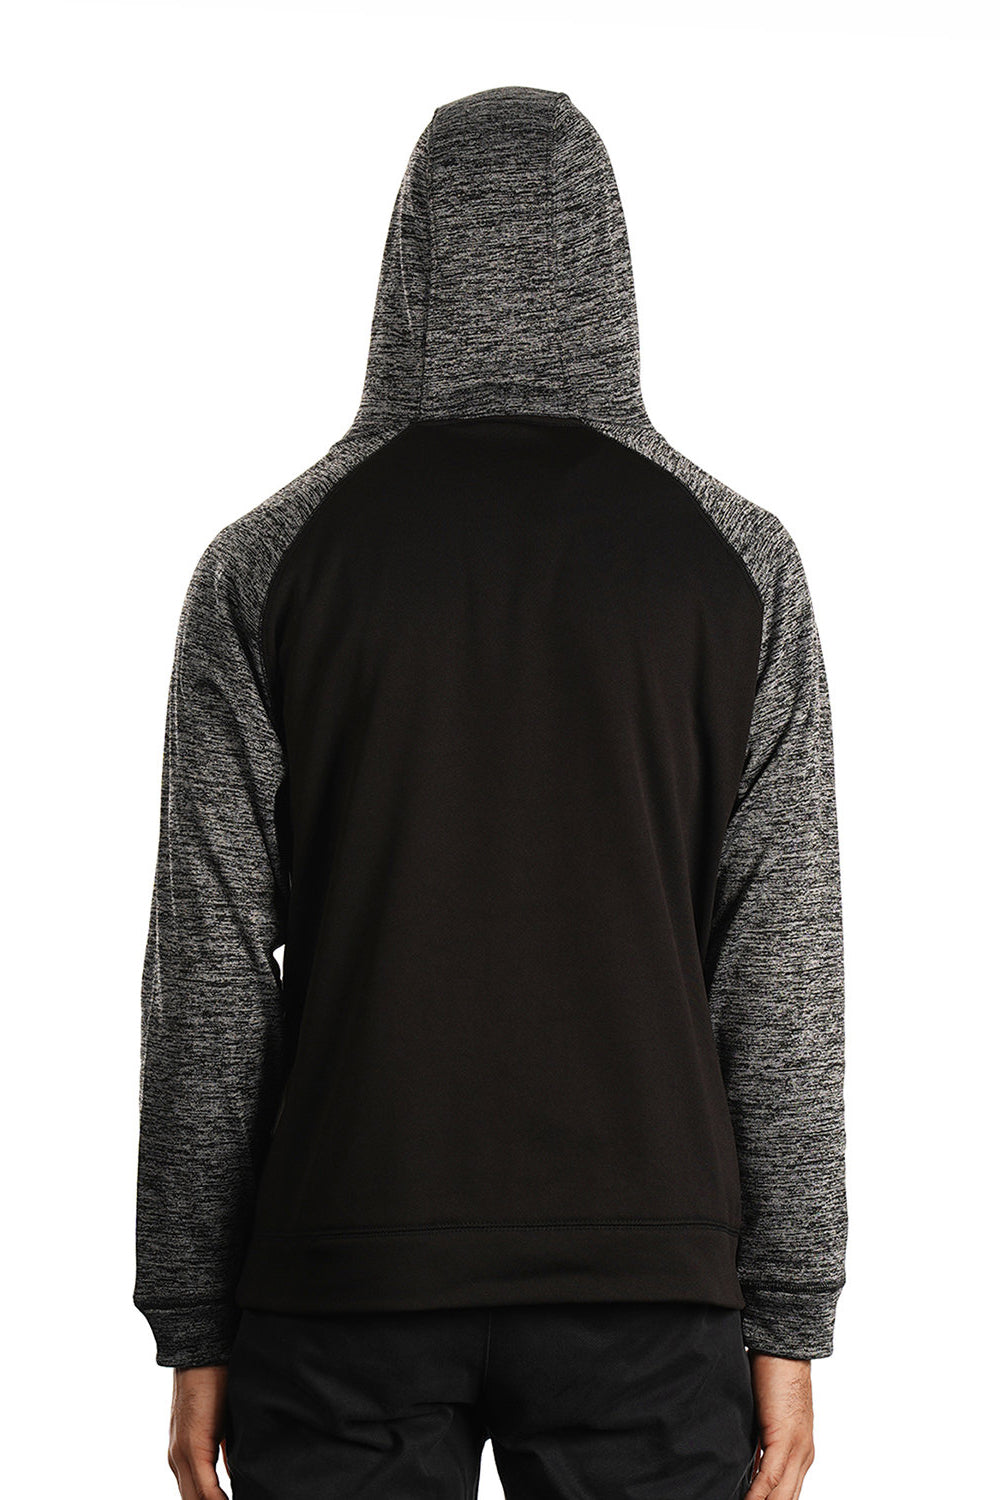 Burnside 8670 Mens Performance Raglan Hooded Sweatshirt Hoodie Black/Heather Charcoal Grey Model Back